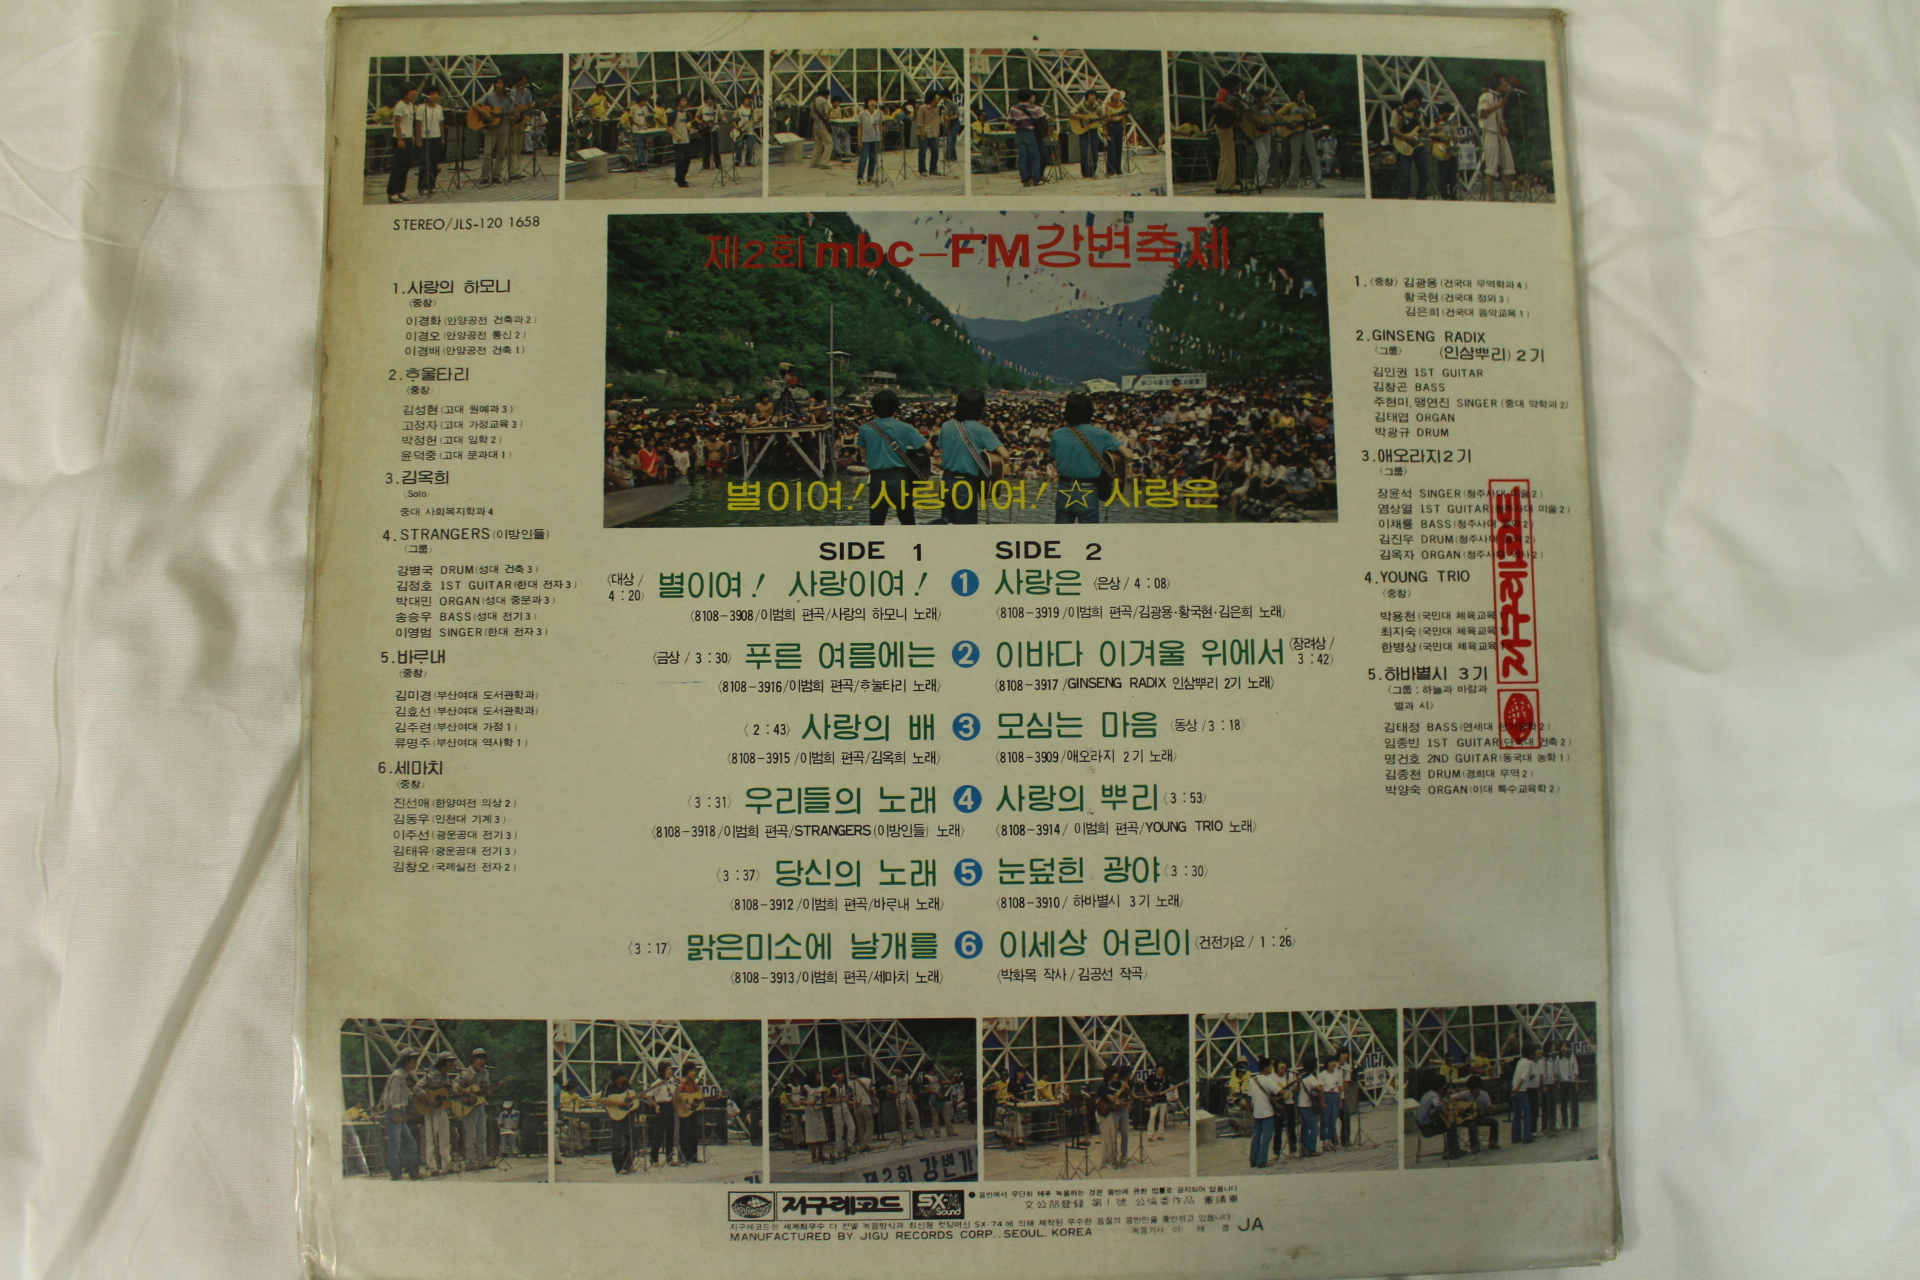 438-1981년 MBG 강변가요제 제2회 강변축제